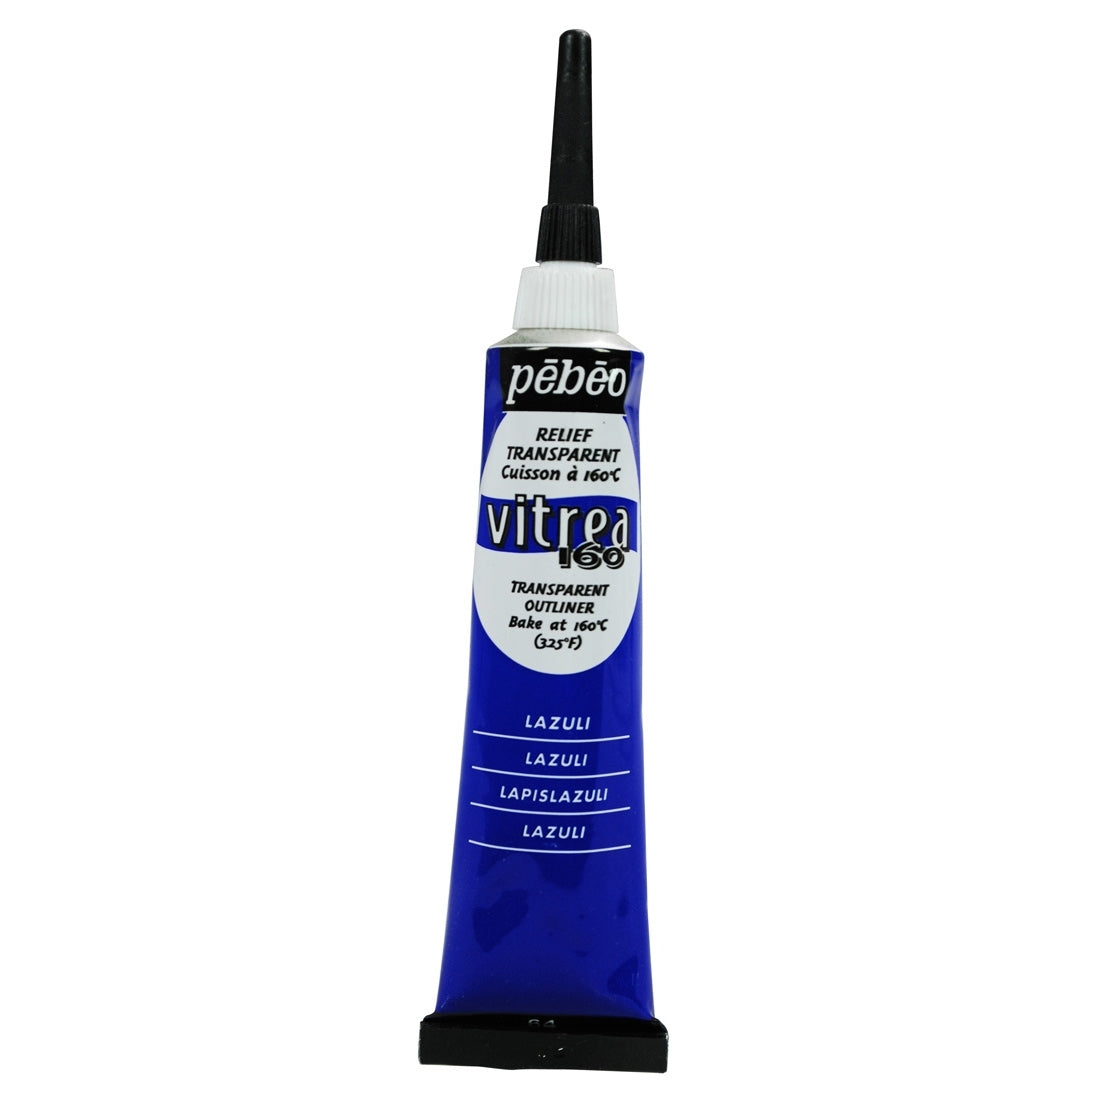 Pebeo - Vitrea 160 - Vernice di vetro e piastrelle - Outliner lucido - Lazuli 20ml